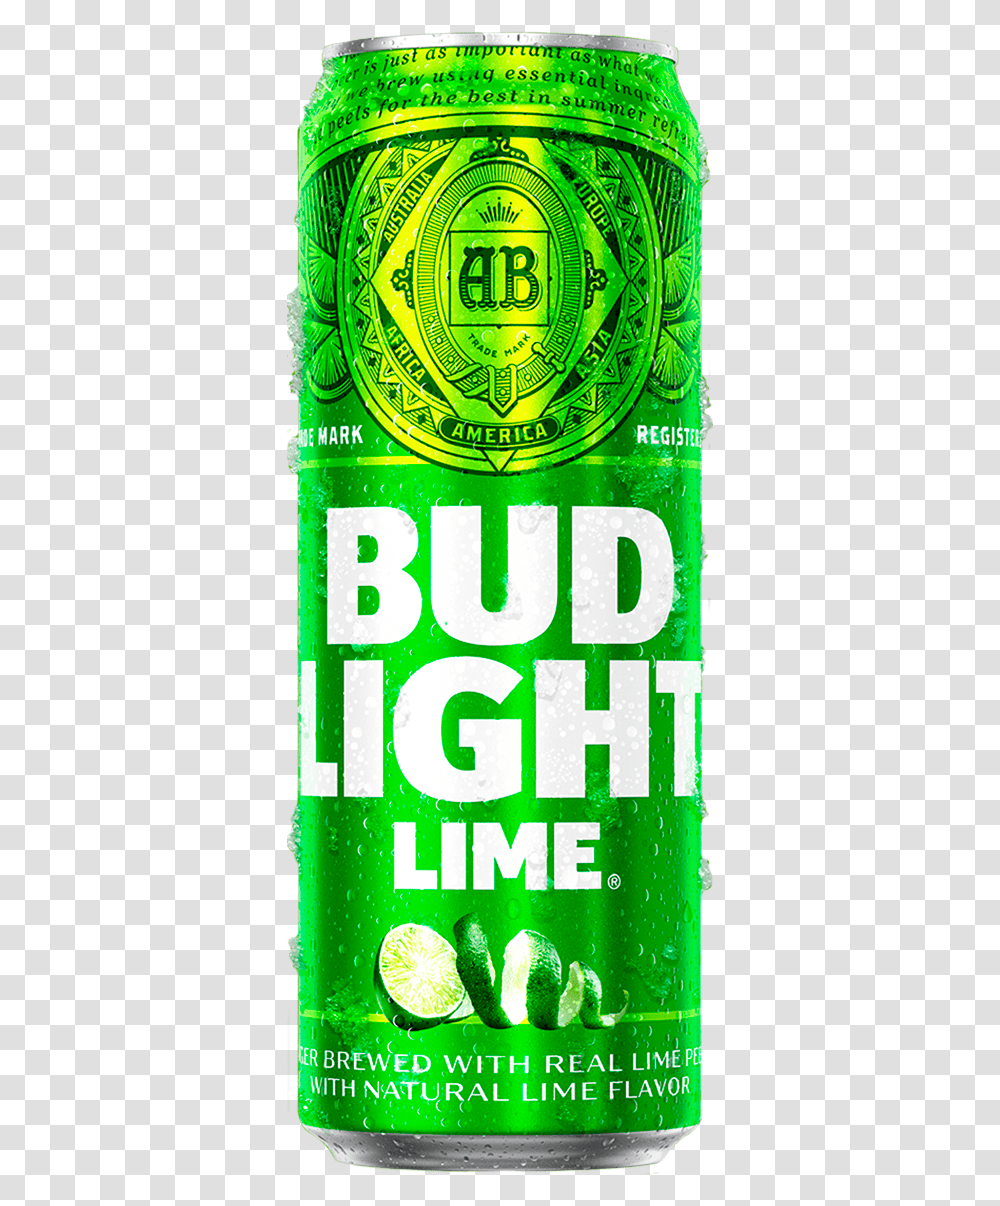 Bud Light Lemonade Lime & Orange Beer Brewed With Citrus Product Label, Alcohol, Beverage, Soda, Bottle Transparent Png